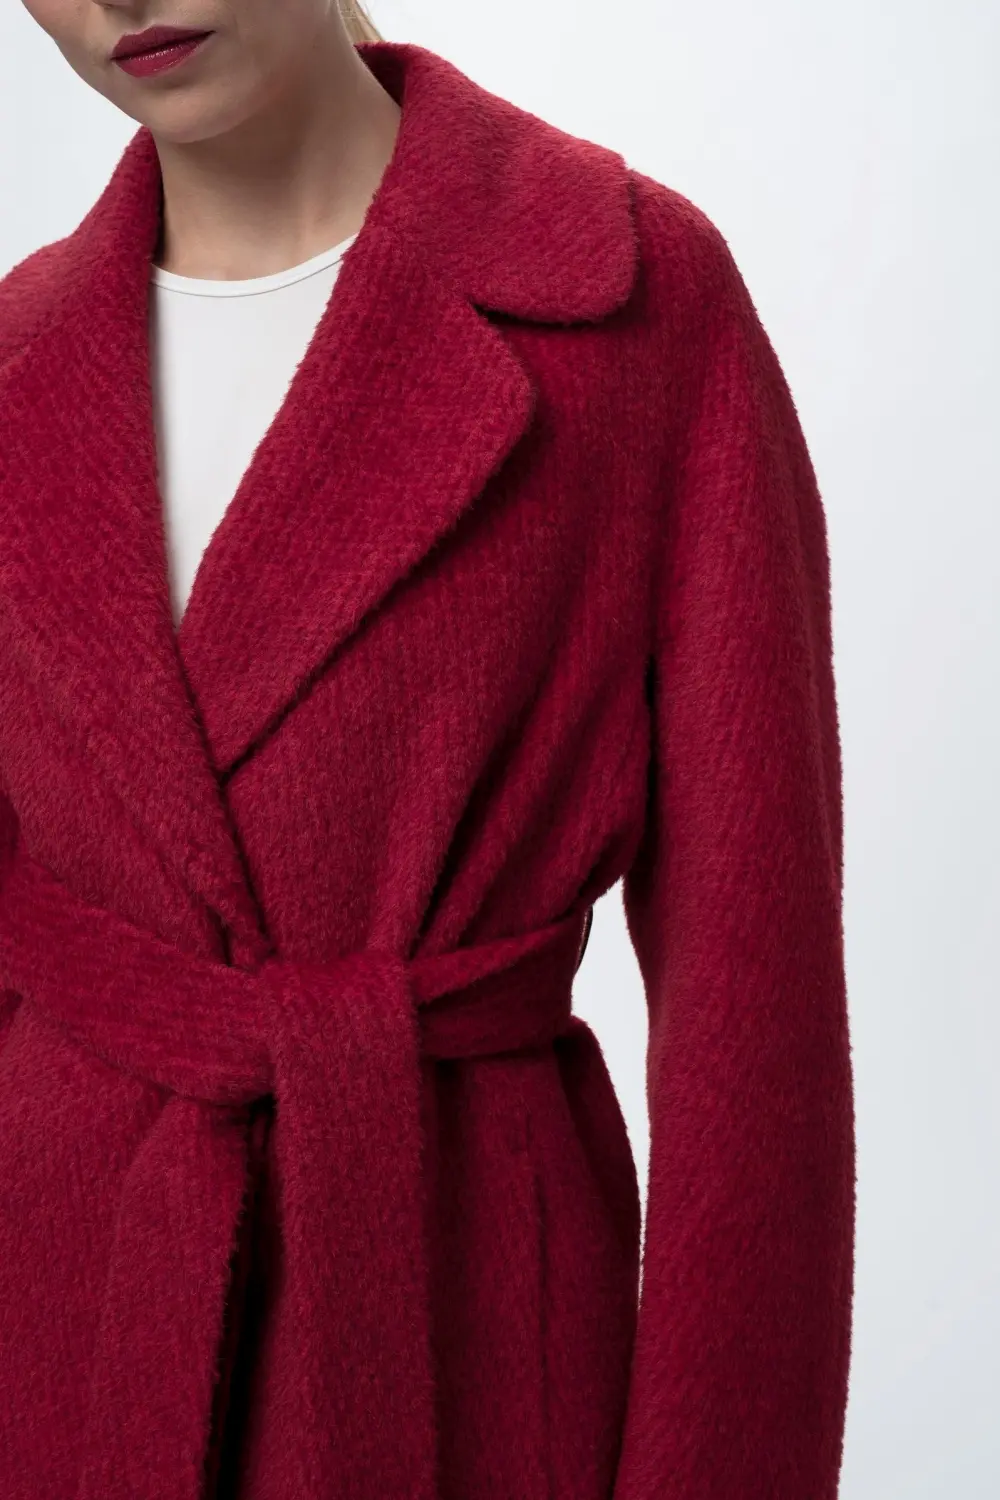 wełniany płaszcz szlafrokowy czerwony wełna dziewicza, alpaka, moher jesień zima